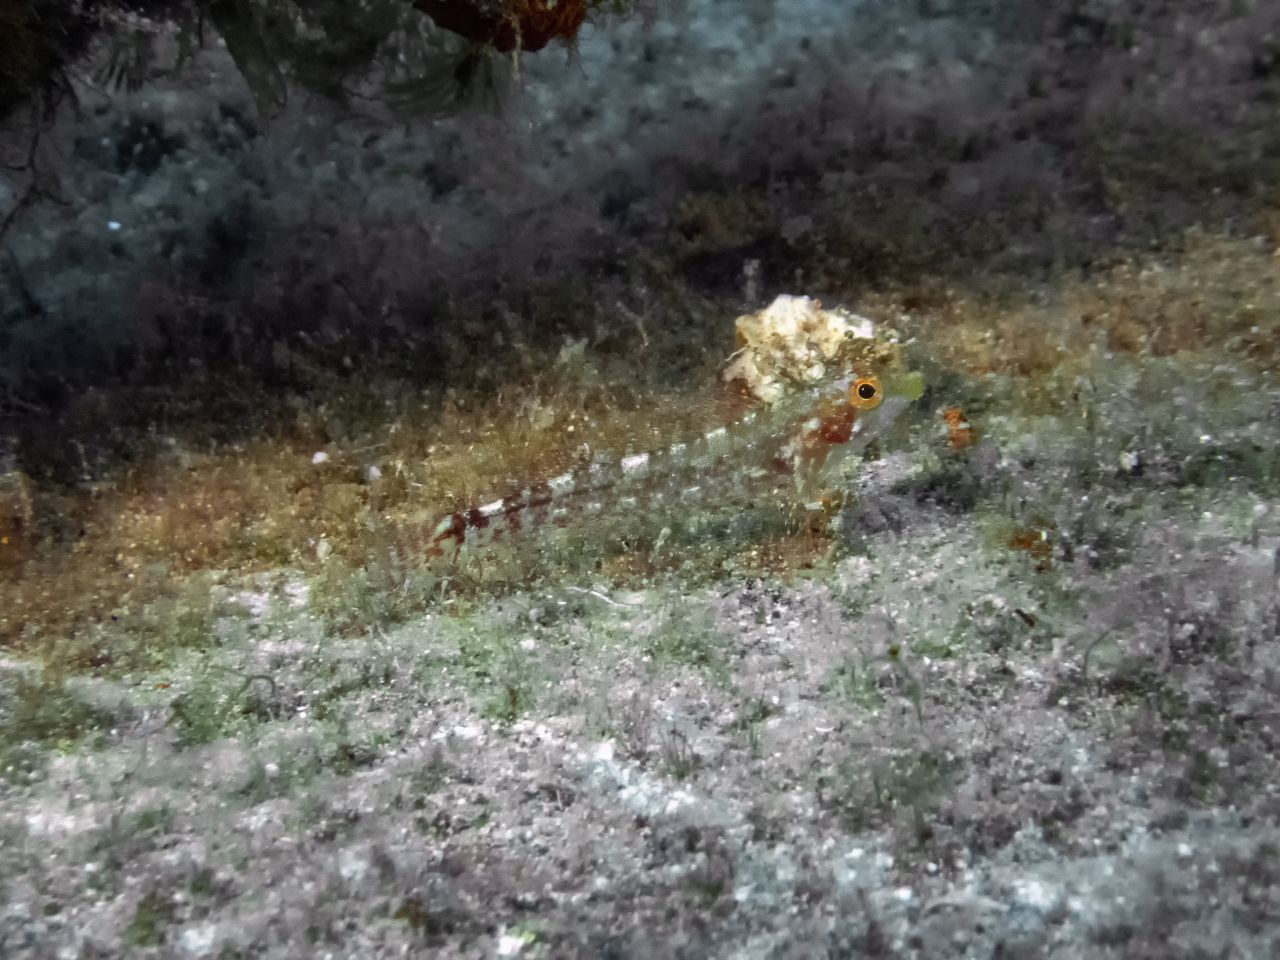 150 Glasfrosch-Arten tummeln sich in den Regenwäldern in Süd- und Mittelamerika. Die vor drei Jahren neu entdeckte Art Hyalinobatrachium yaku ist nur zwei Zentimeter groß. Öl-Gewinnung und Umwelt-Verschmutzung bedrohen den Lebensraum der Amphibien.